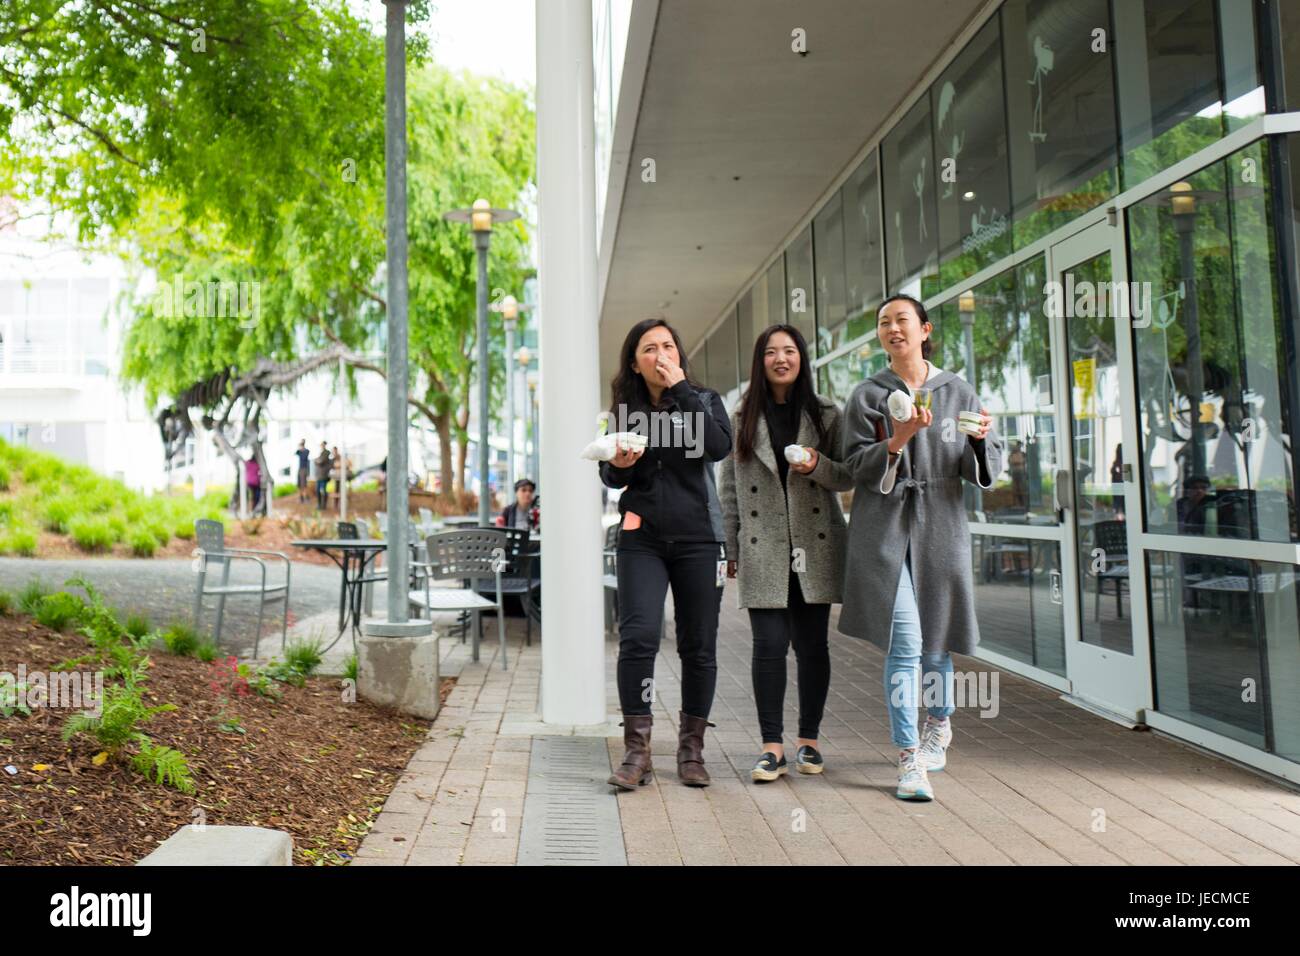 Tres jóvenes mujeres de edad milenaria tech trabajadores caminan y mantenga el almuerzo foods en el Googleplex, la sede de Google Inc en el Silicon Valley, la ciudad de Mountain View, California, 7 de abril de 2017. La diversidad es un tema importante en Silicon Valley, especialmente la inclusión de más mujeres en los empleos tecnológicos. Foto de stock